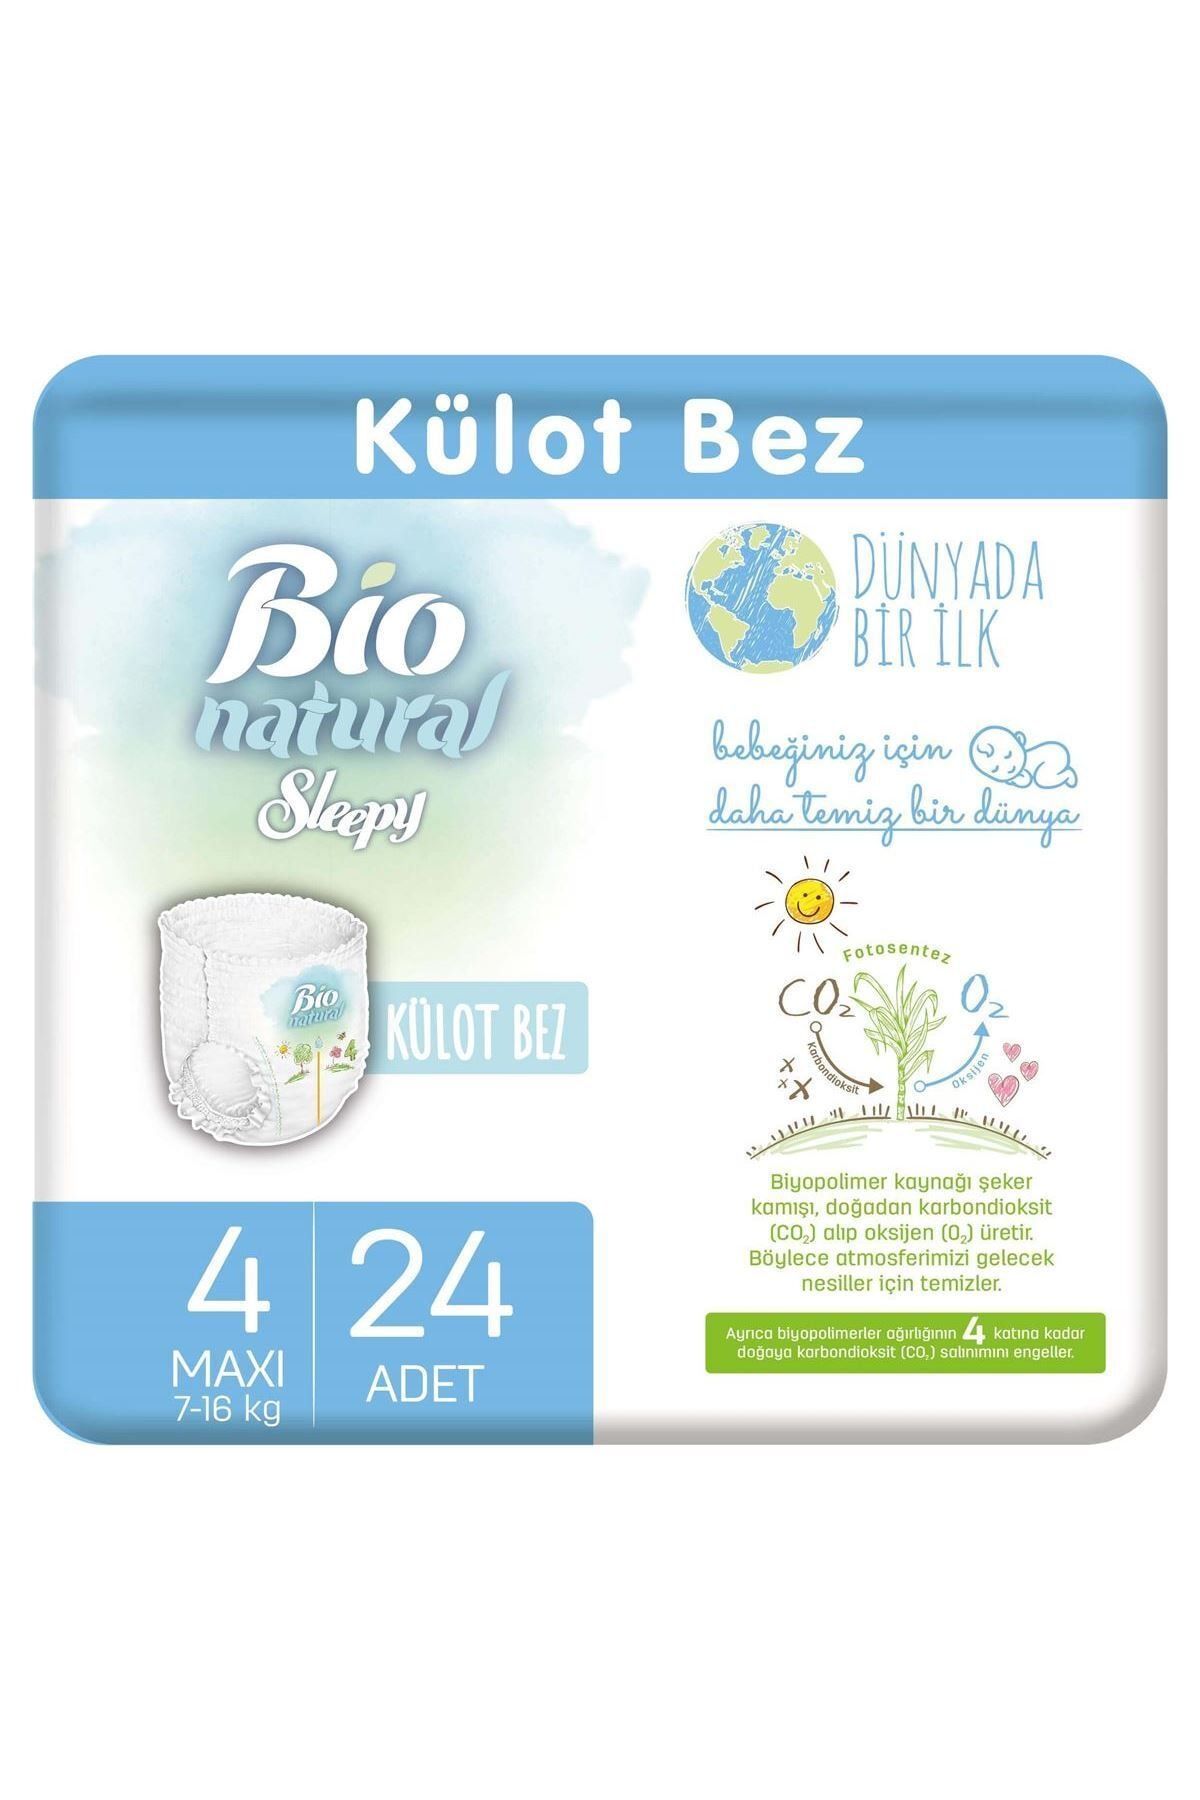 Sleepy Bio Natural Külot Bez 4 Numara Maxi 24 Adet